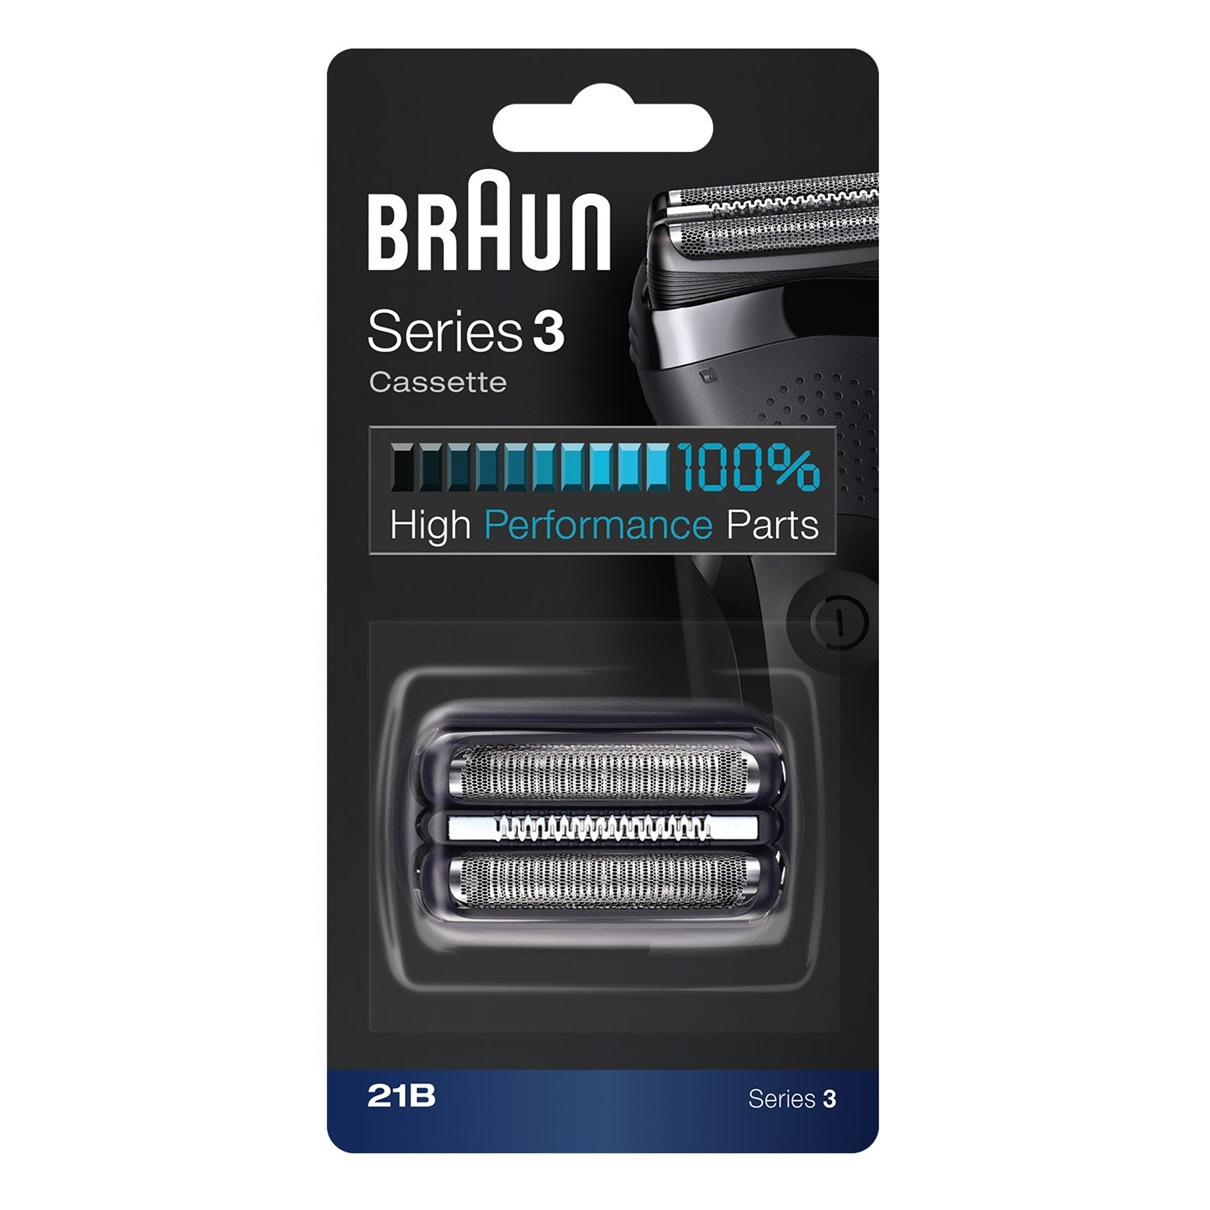 Сетка и режущий блок для бритв Braun 21B сетка и режущий блок braun 21b series 3 series 3 черный 21b